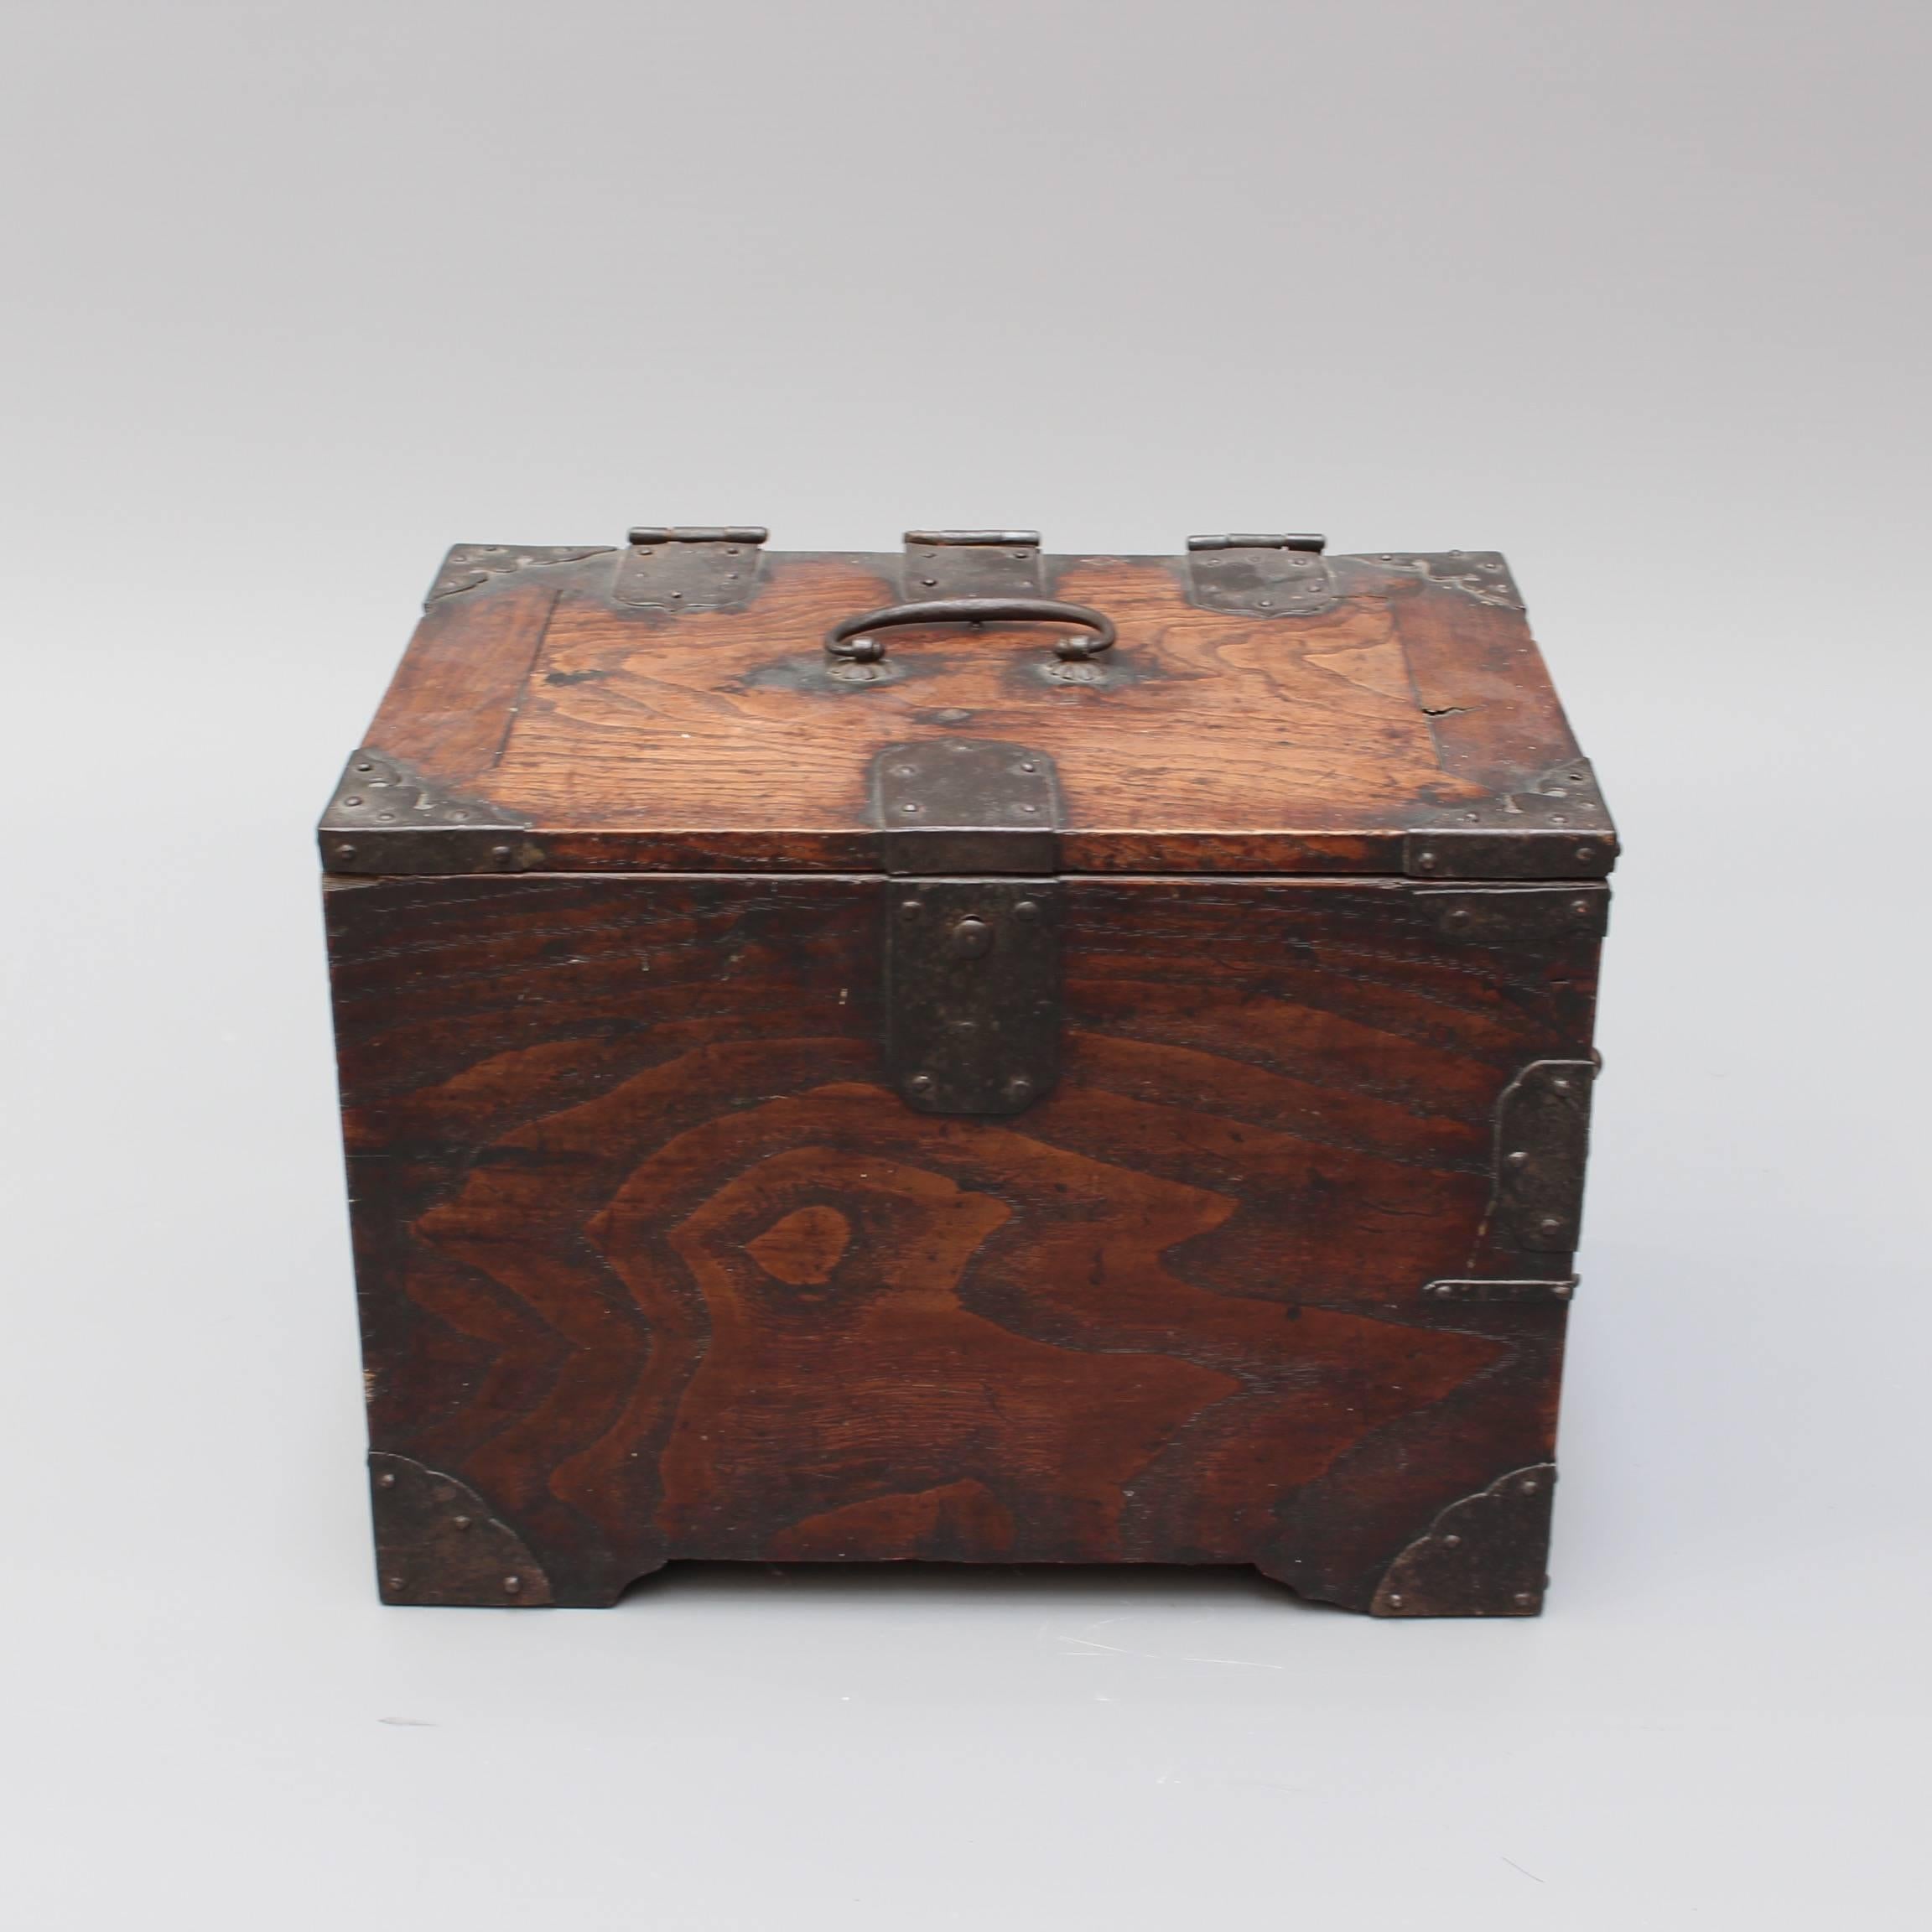 Antique Japanese Wooden Writing Box with Decorative Hardware 'Meiji Era' 9